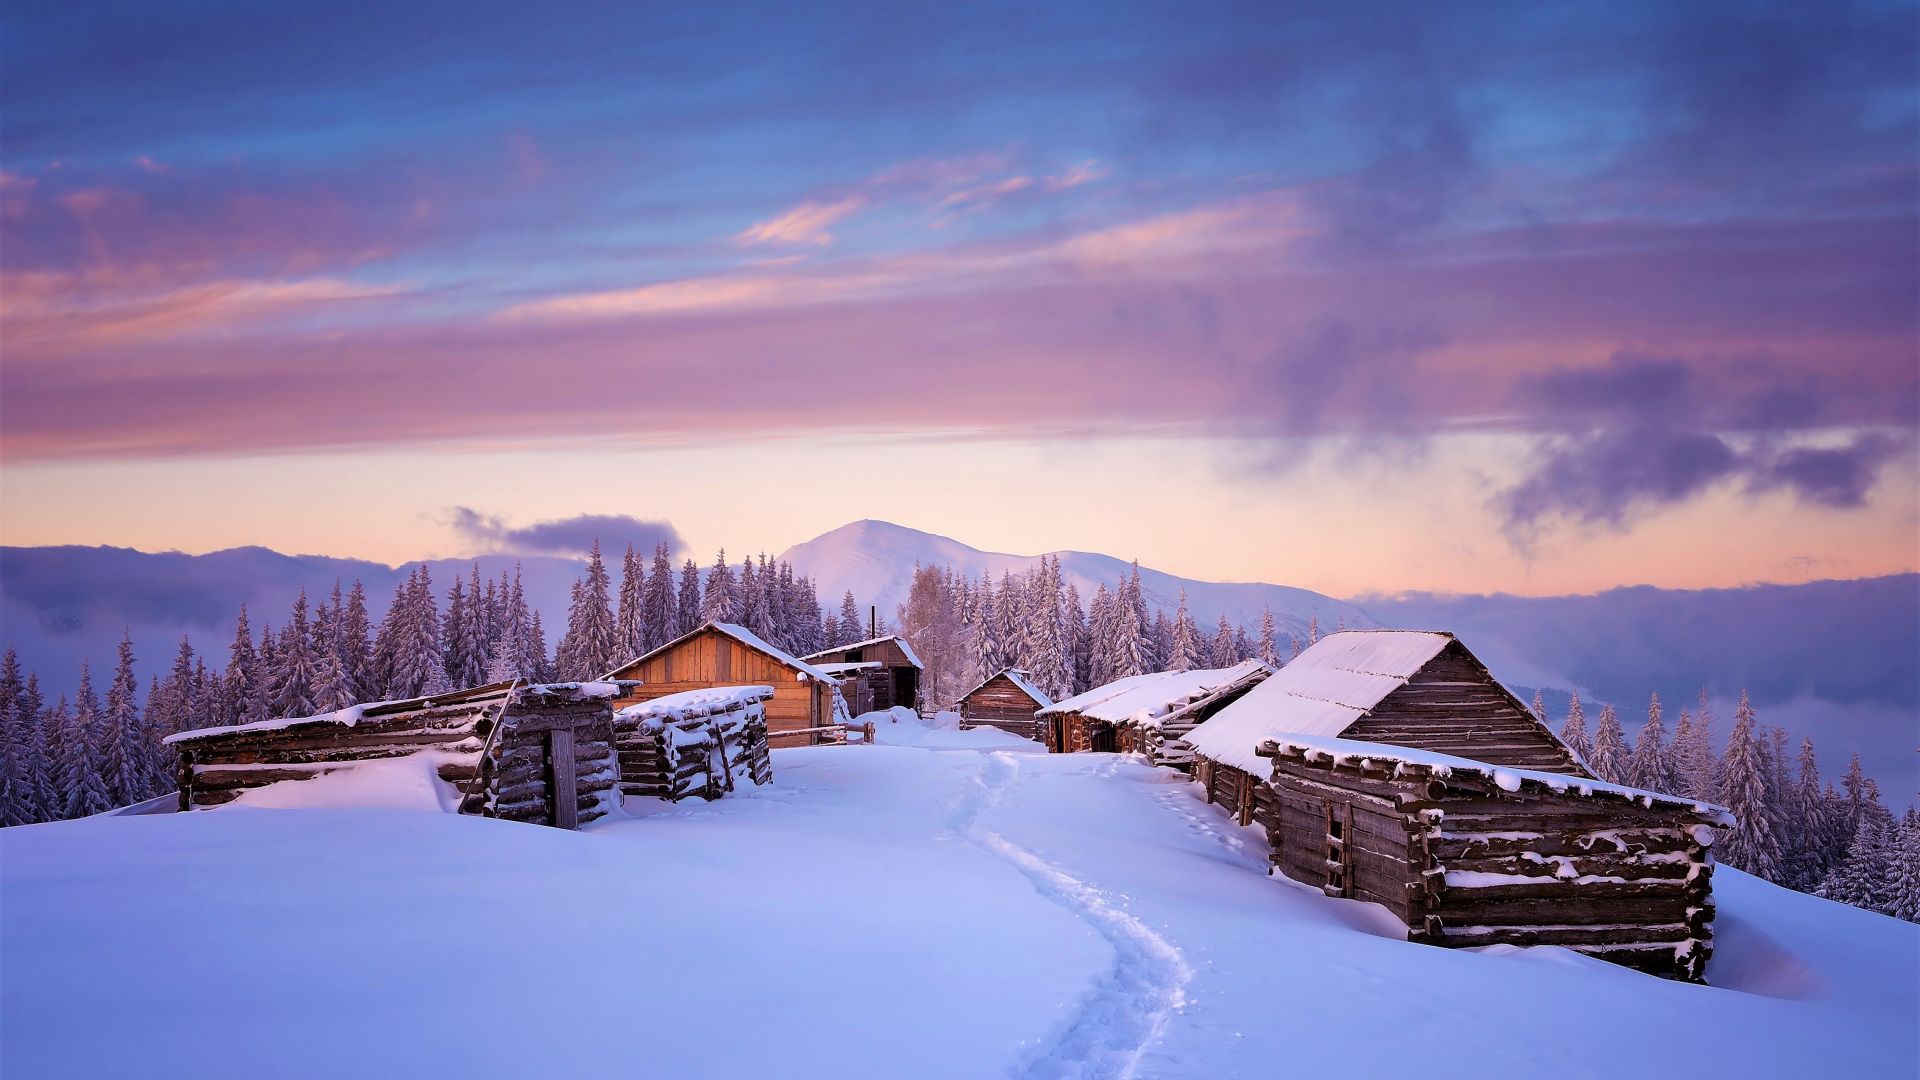 Desktop Wallpaper Houses, Winter, Landscape, Sunset, 4k, Hd Image, Picture,  Background, 5c16ef